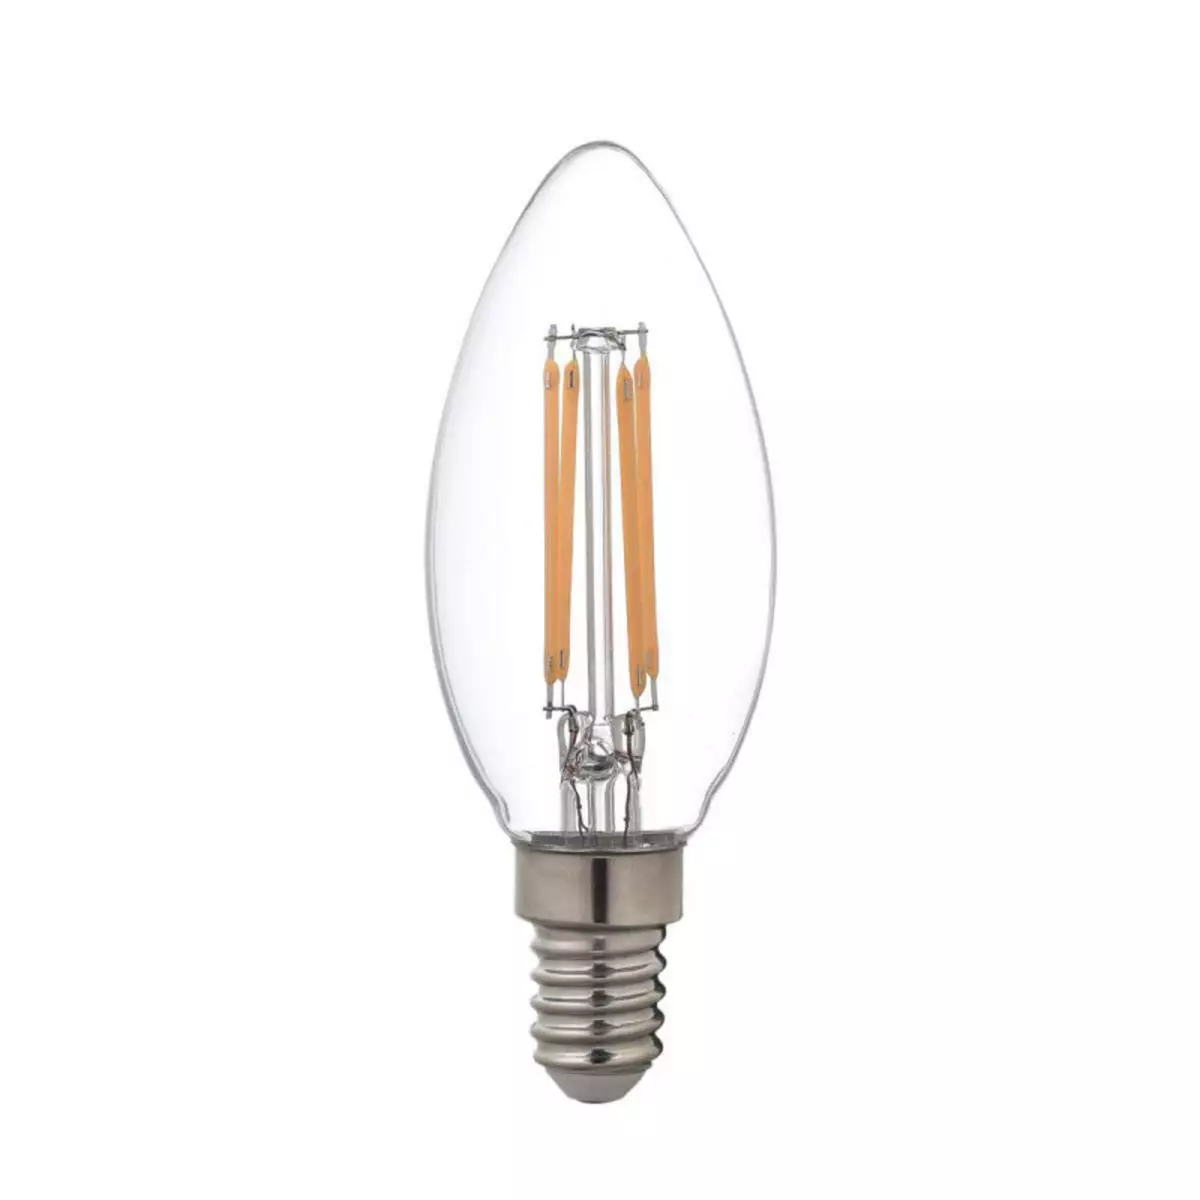  Ampoule LED Filament XXCELL Flamme clair - E14 équivalent 40W